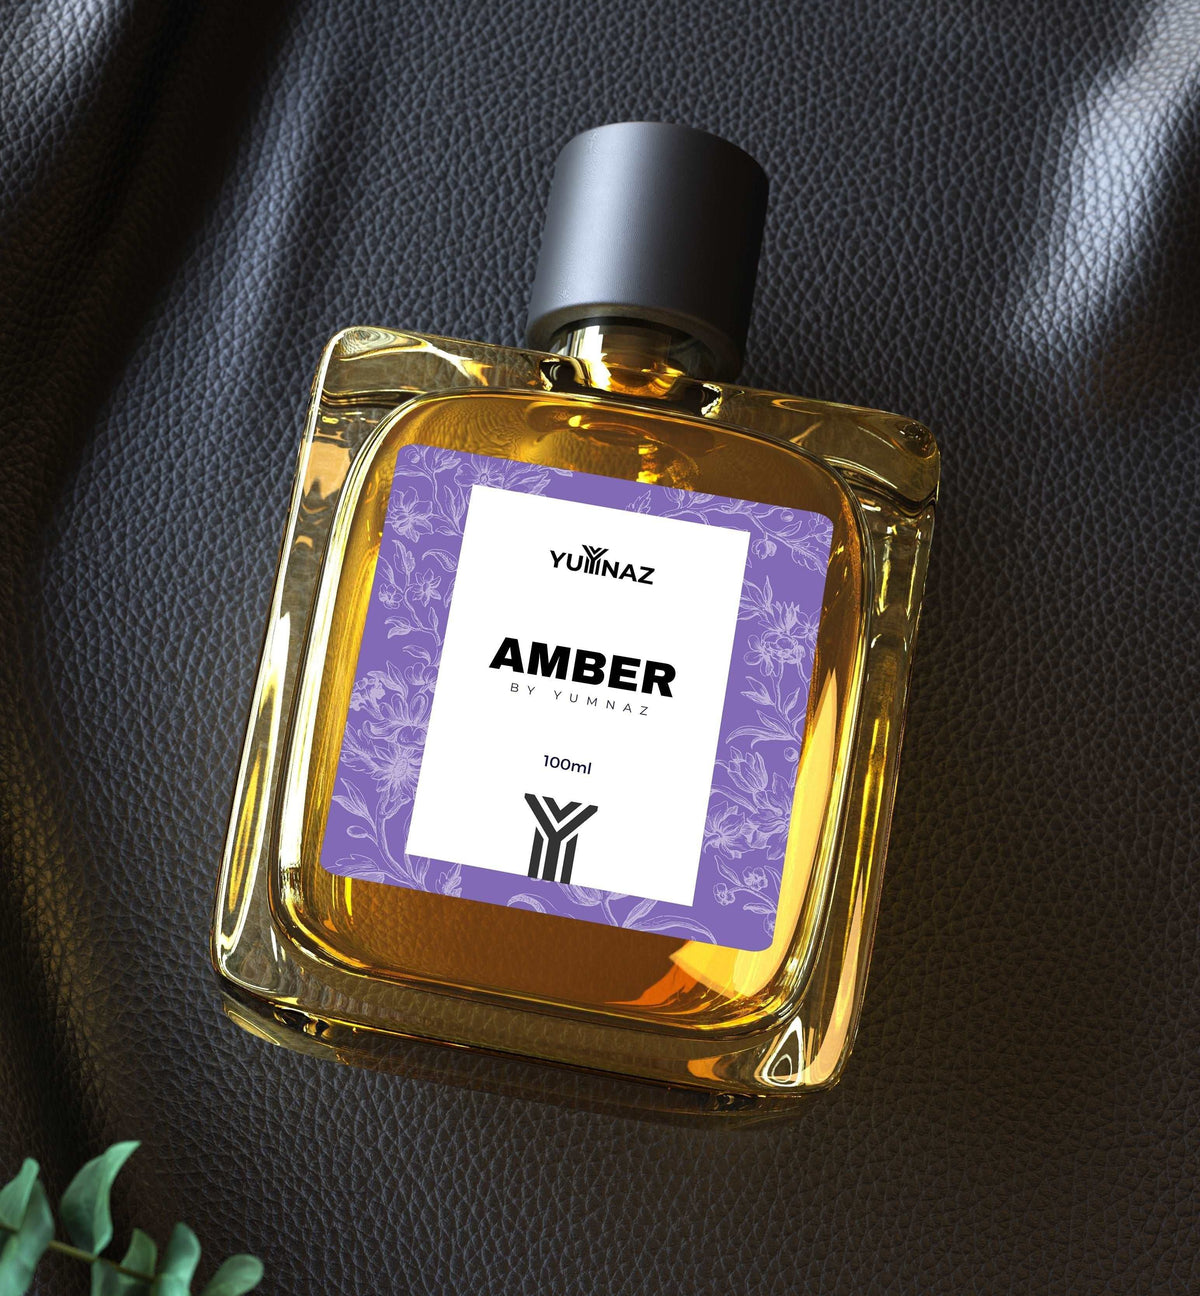 Amber Perfume Price in Pakistan